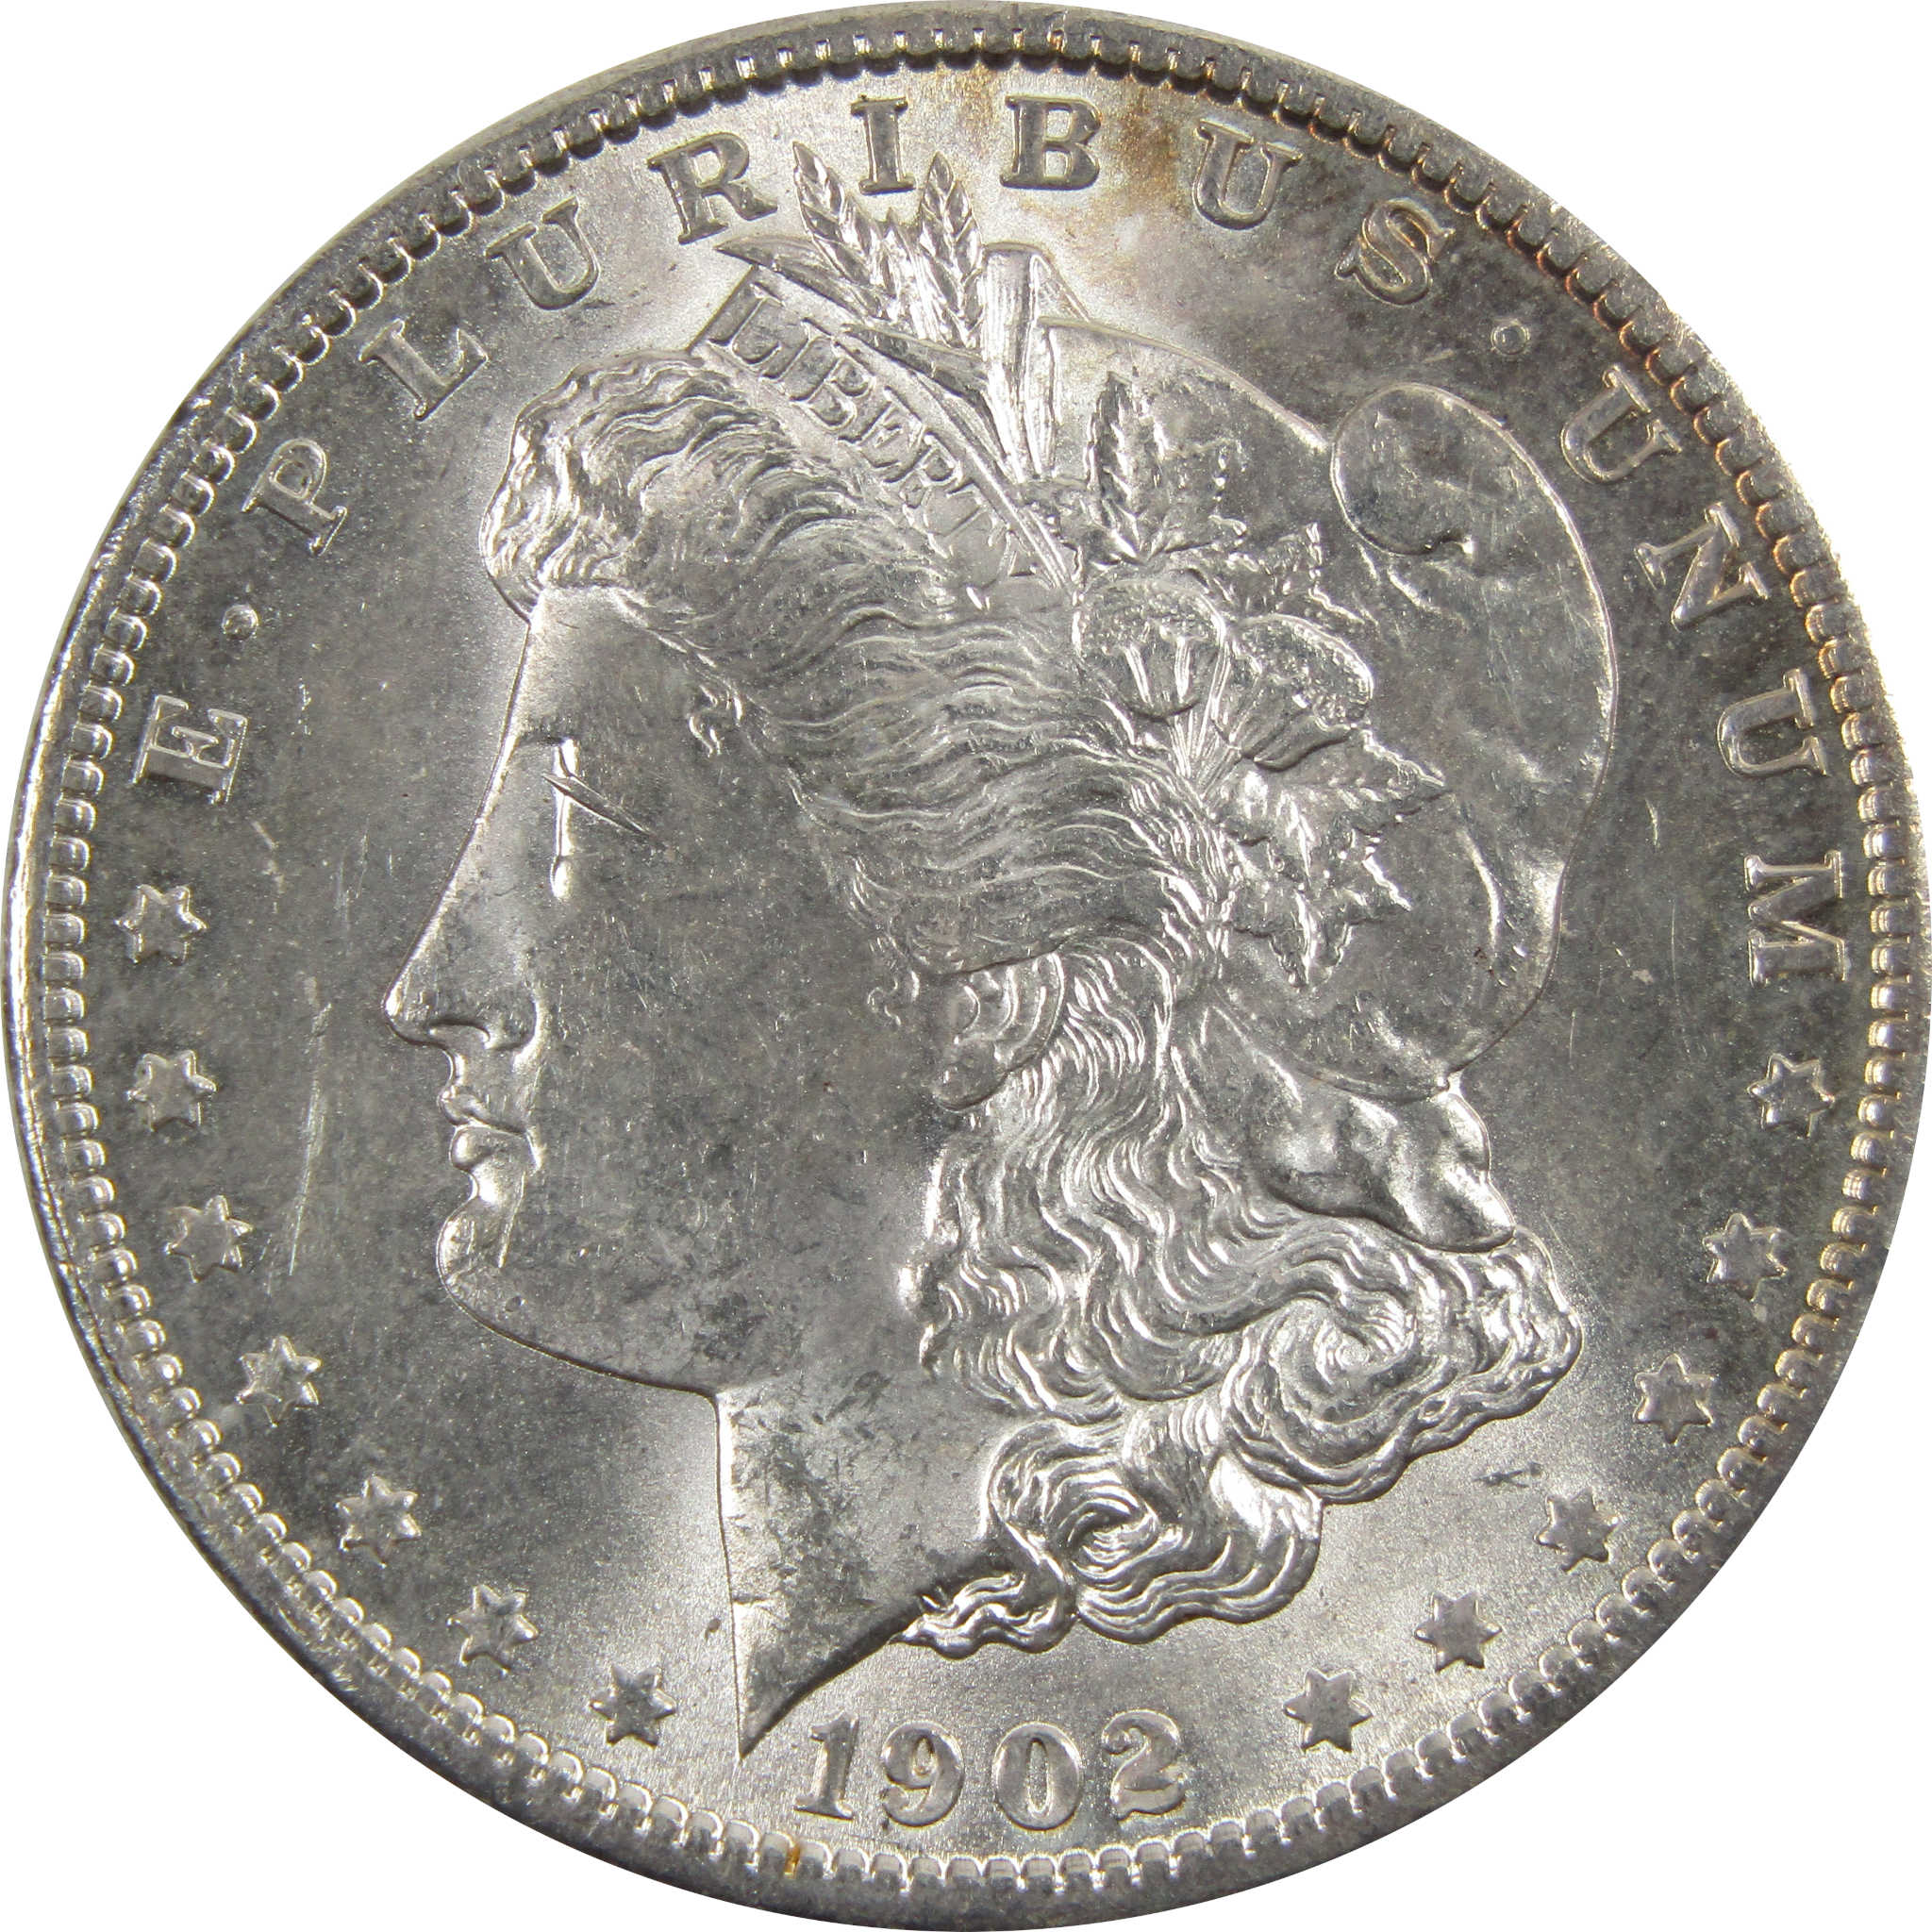 1902 O Morgan Dollar BU Uncirculated 90% Silver $1 Coin SKU:I5198 - Morgan coin - Morgan silver dollar - Morgan silver dollar for sale - Profile Coins &amp; Collectibles